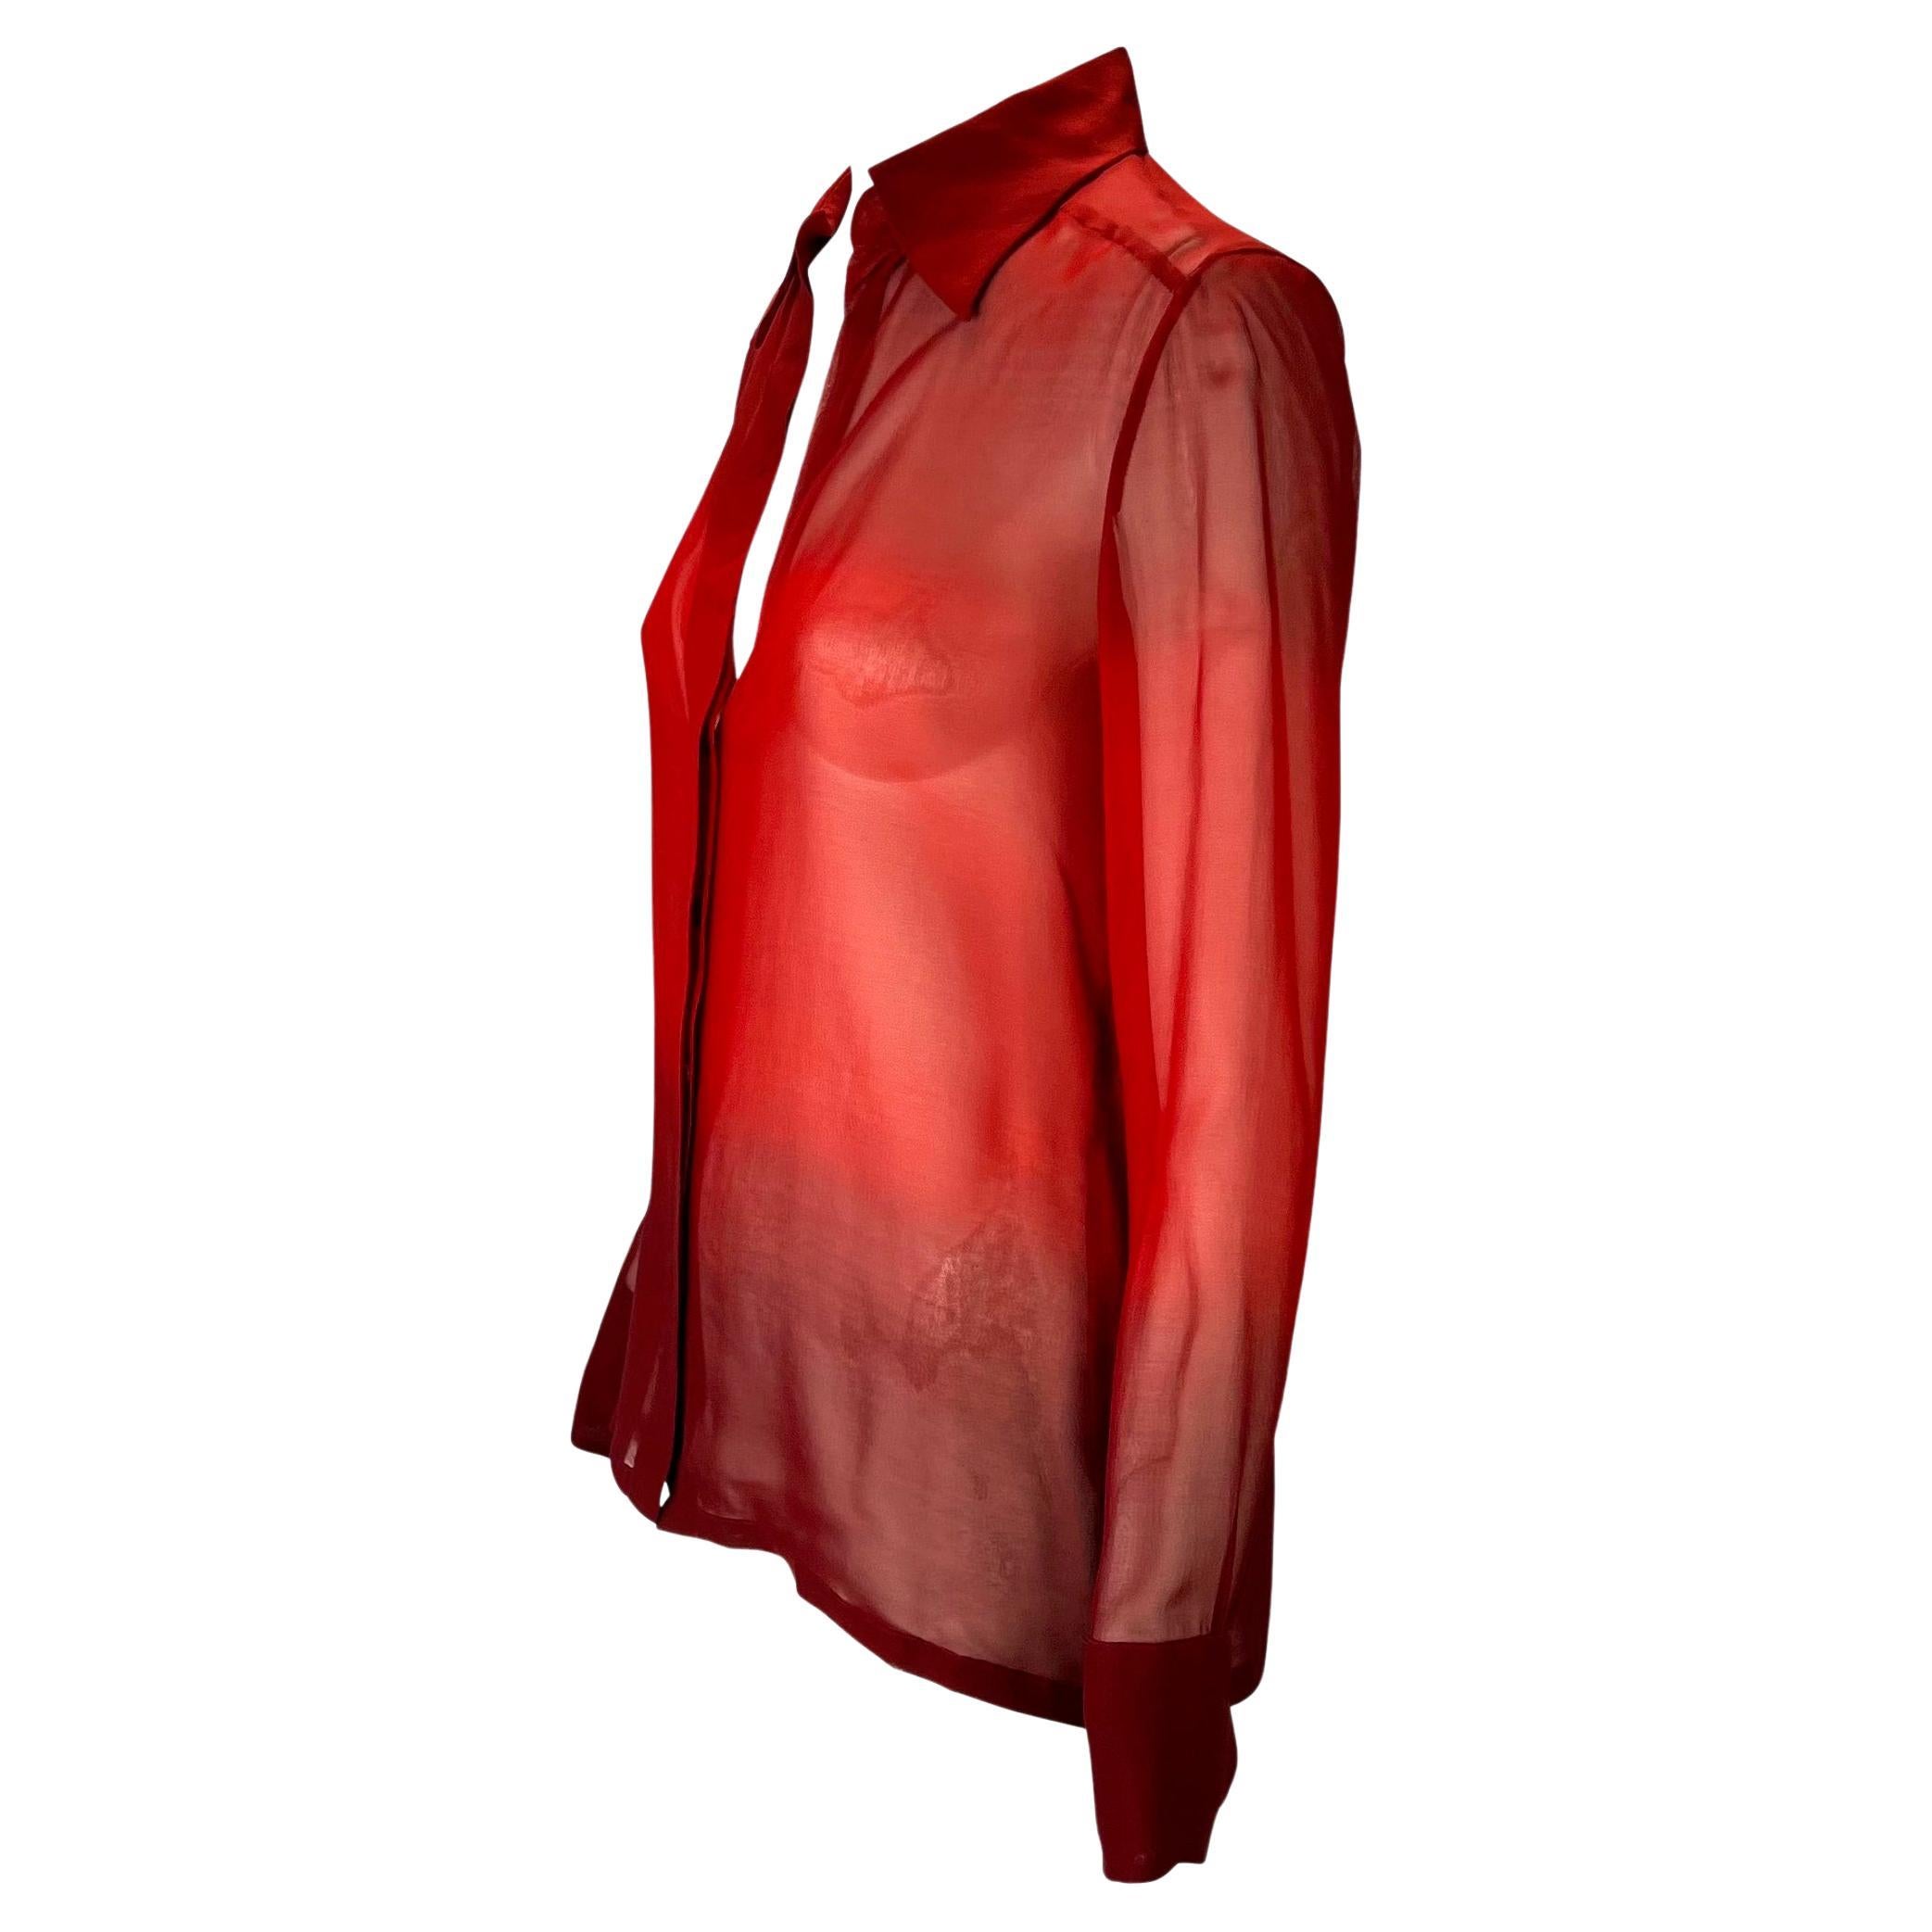 Wir präsentieren ein wunderschönes durchsichtiges Ombré-Hemd, das Tom Ford für die Frühjahr/Sommer-Kollektion 1997 von Gucci entworfen hat. Der Knopfverschluss endet etwa auf halber Höhe der Vorderseite und sorgt für einen tiefen Ausschnitt. Schick